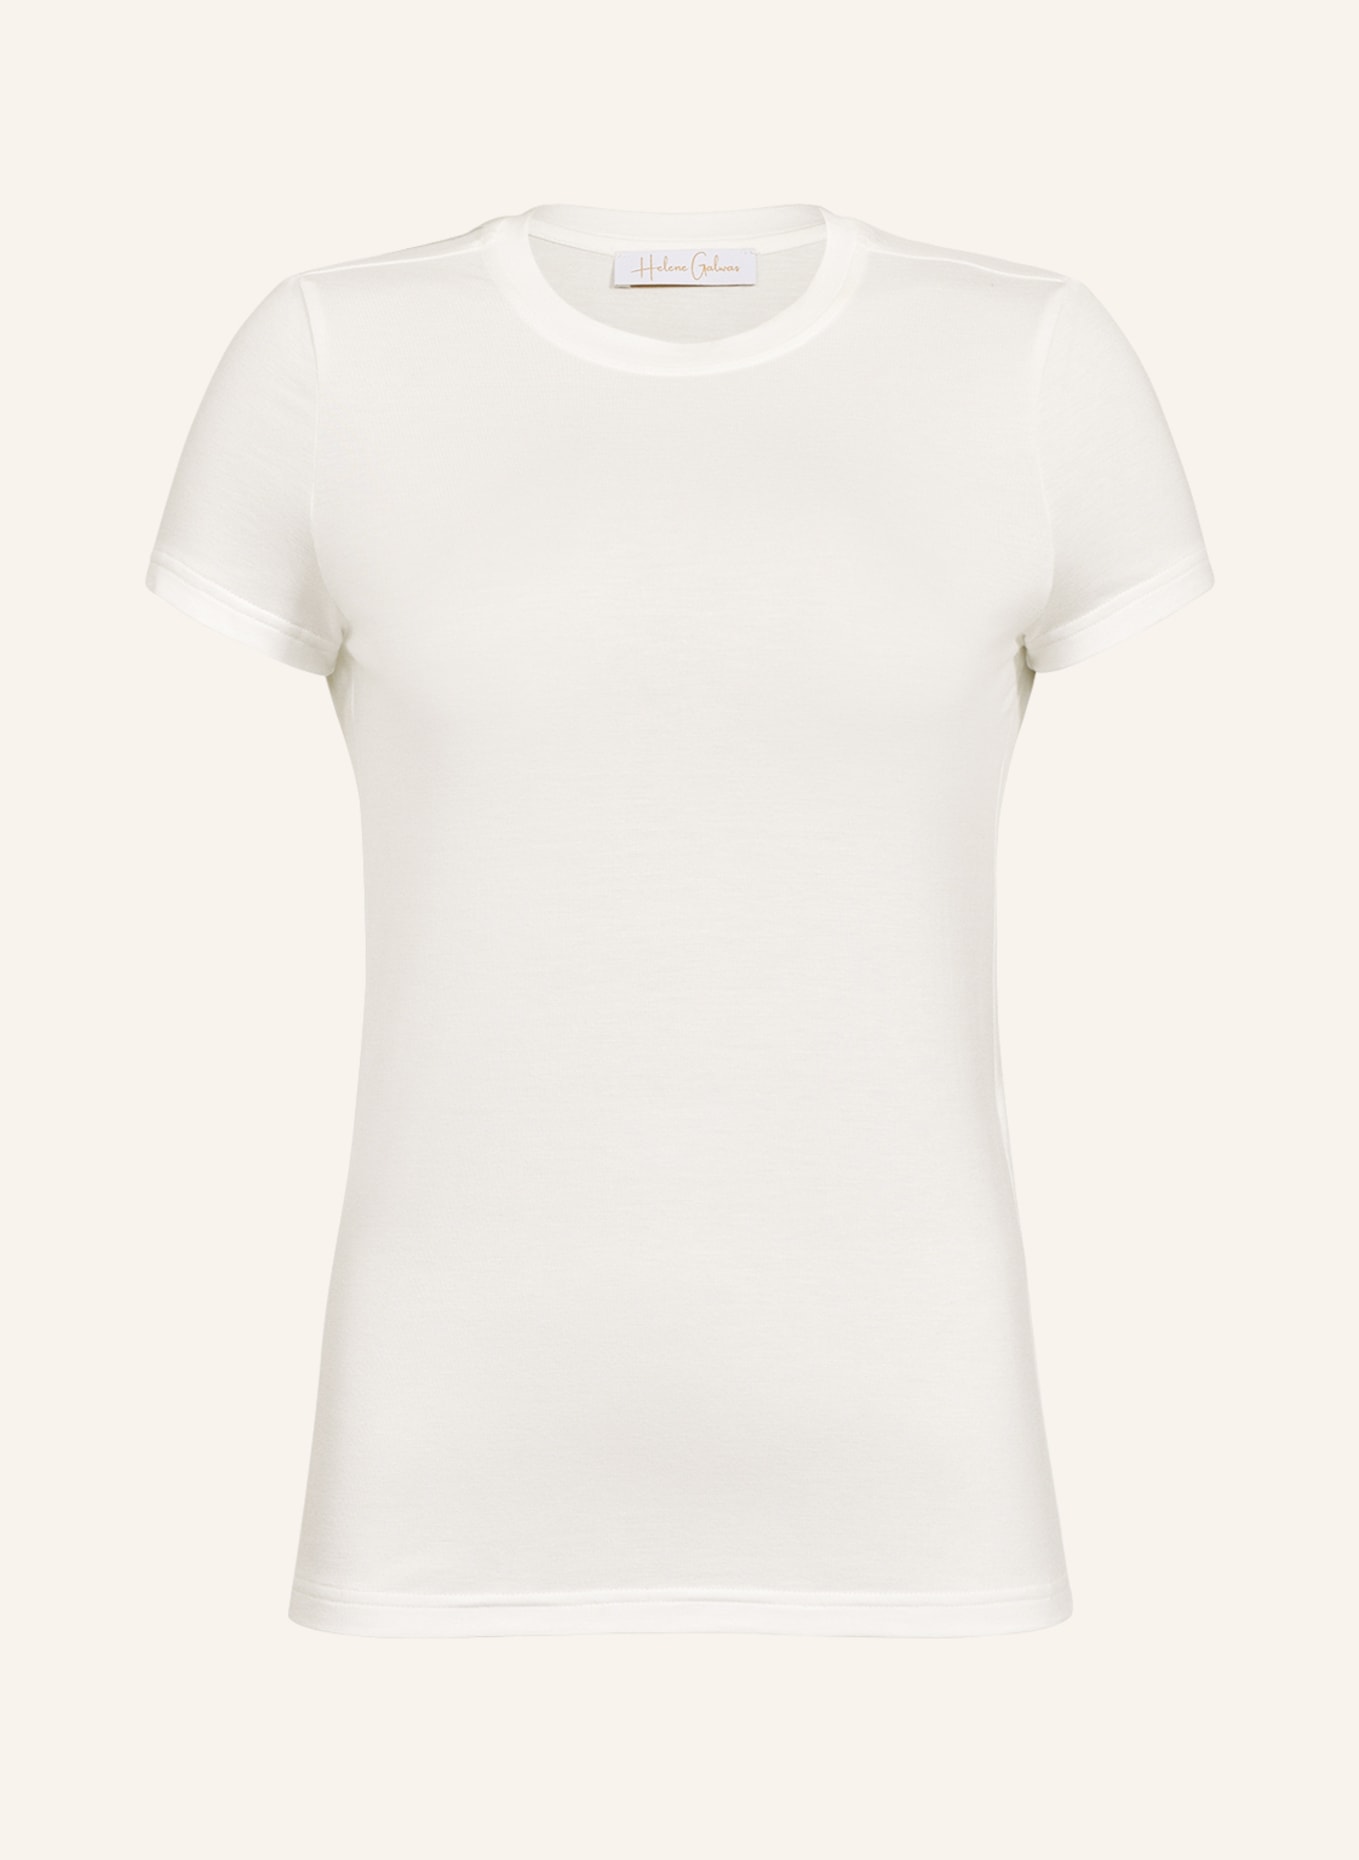 Helene Galwas T-Shirt FRANCA, Farbe: WEISS (Bild 1)